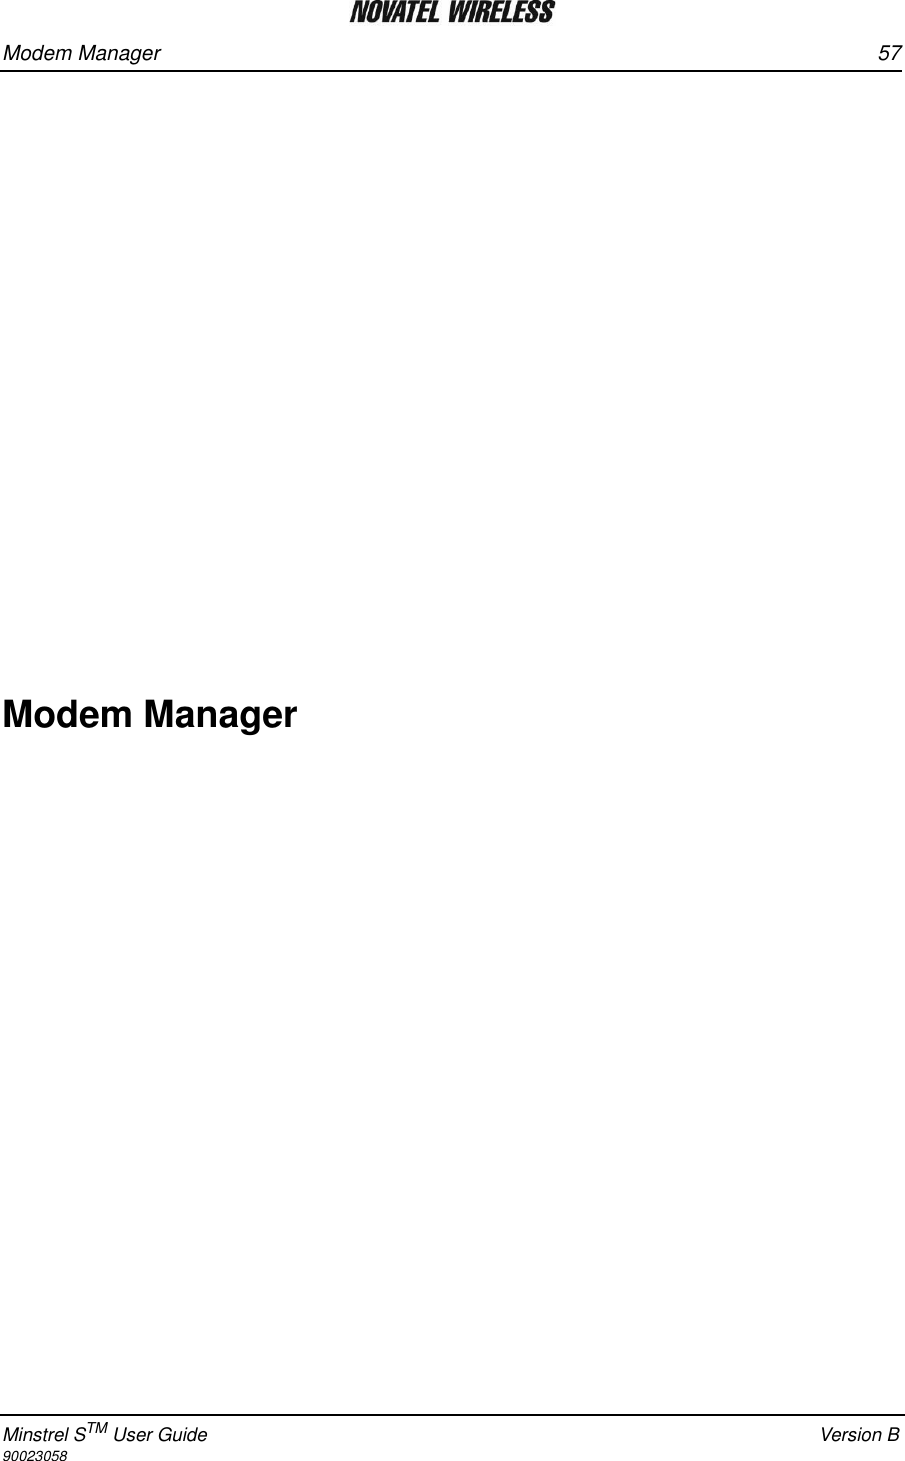 Modem Manager 57Minstrel STM User Guide Version B90023058Modem Manager